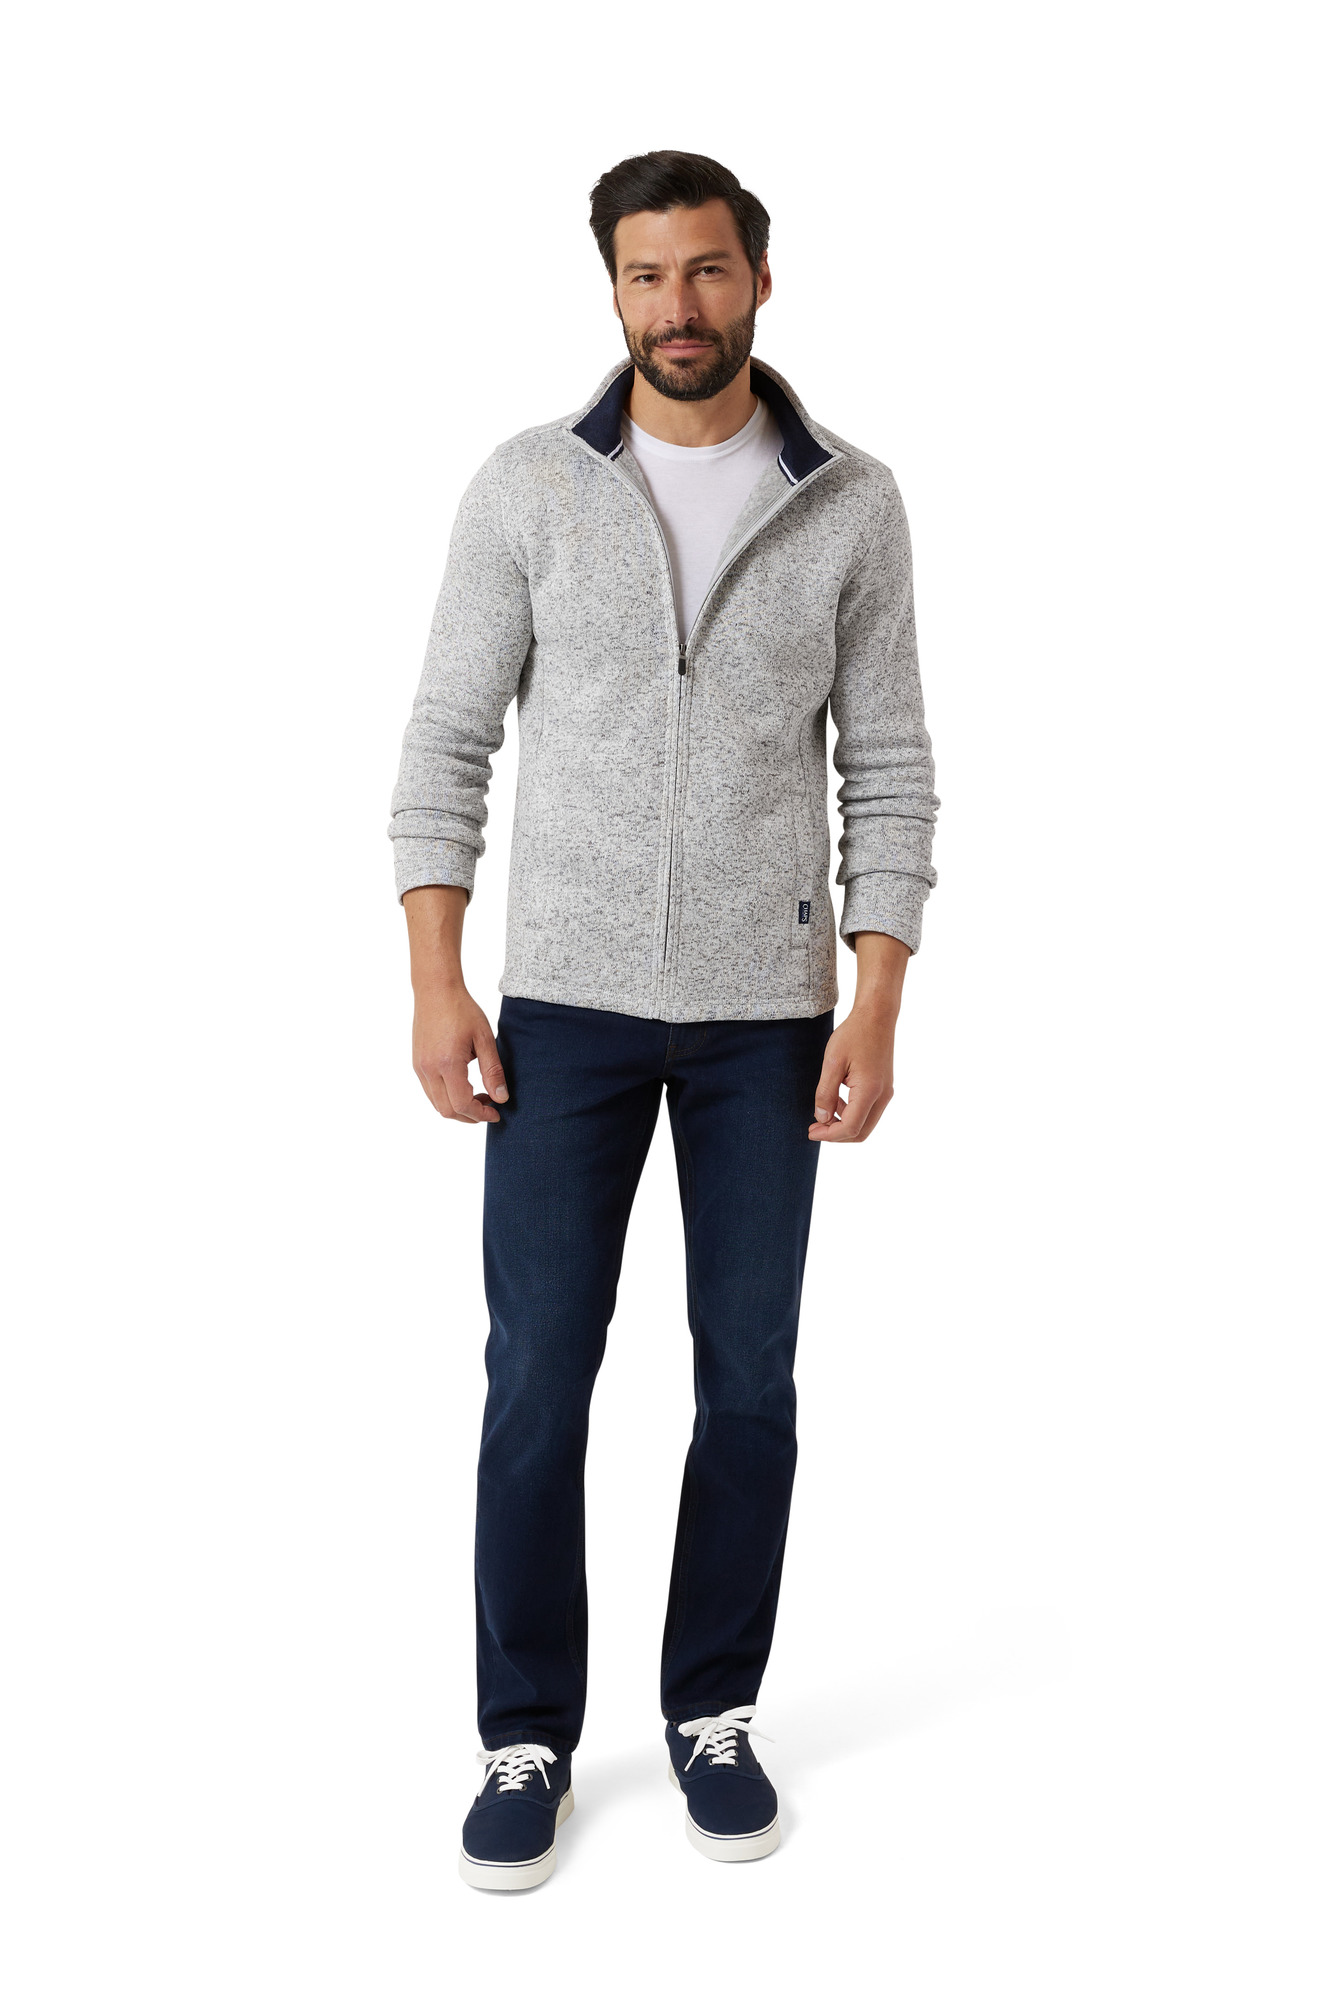 Chaps Men's & Big Men's Full Zip Sweater Fleece - image 4 of 7